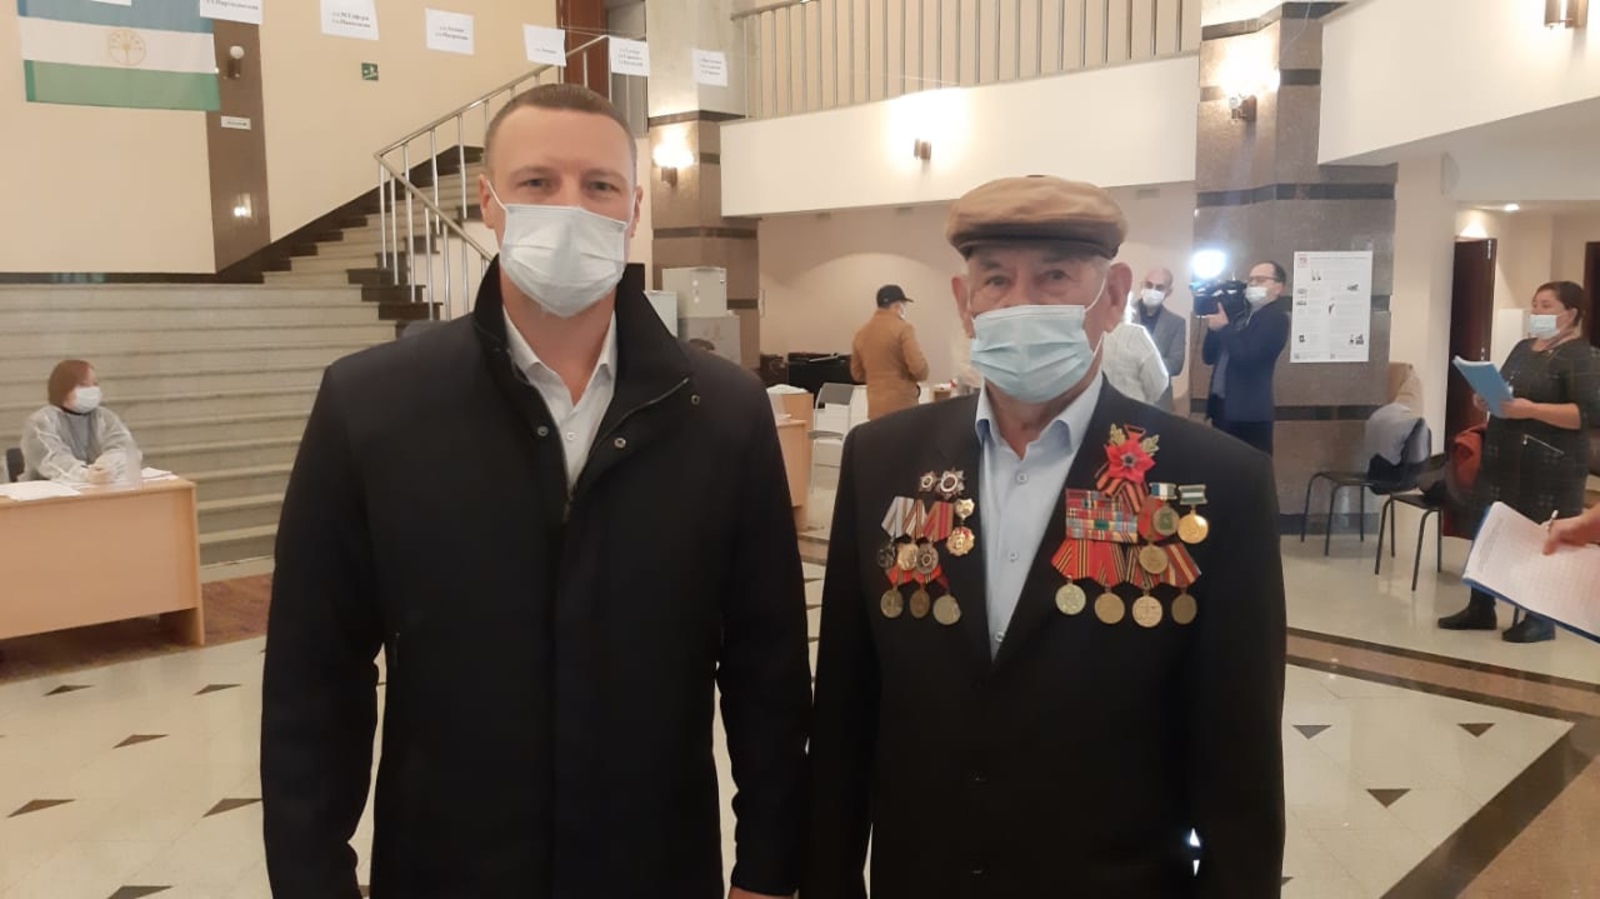 Сельчане спешат сделать свой выбор. На избирательный участок пришел 96 - летний ветеран Великой Отечественной войны Шариф Гадиевич Мусагитов.